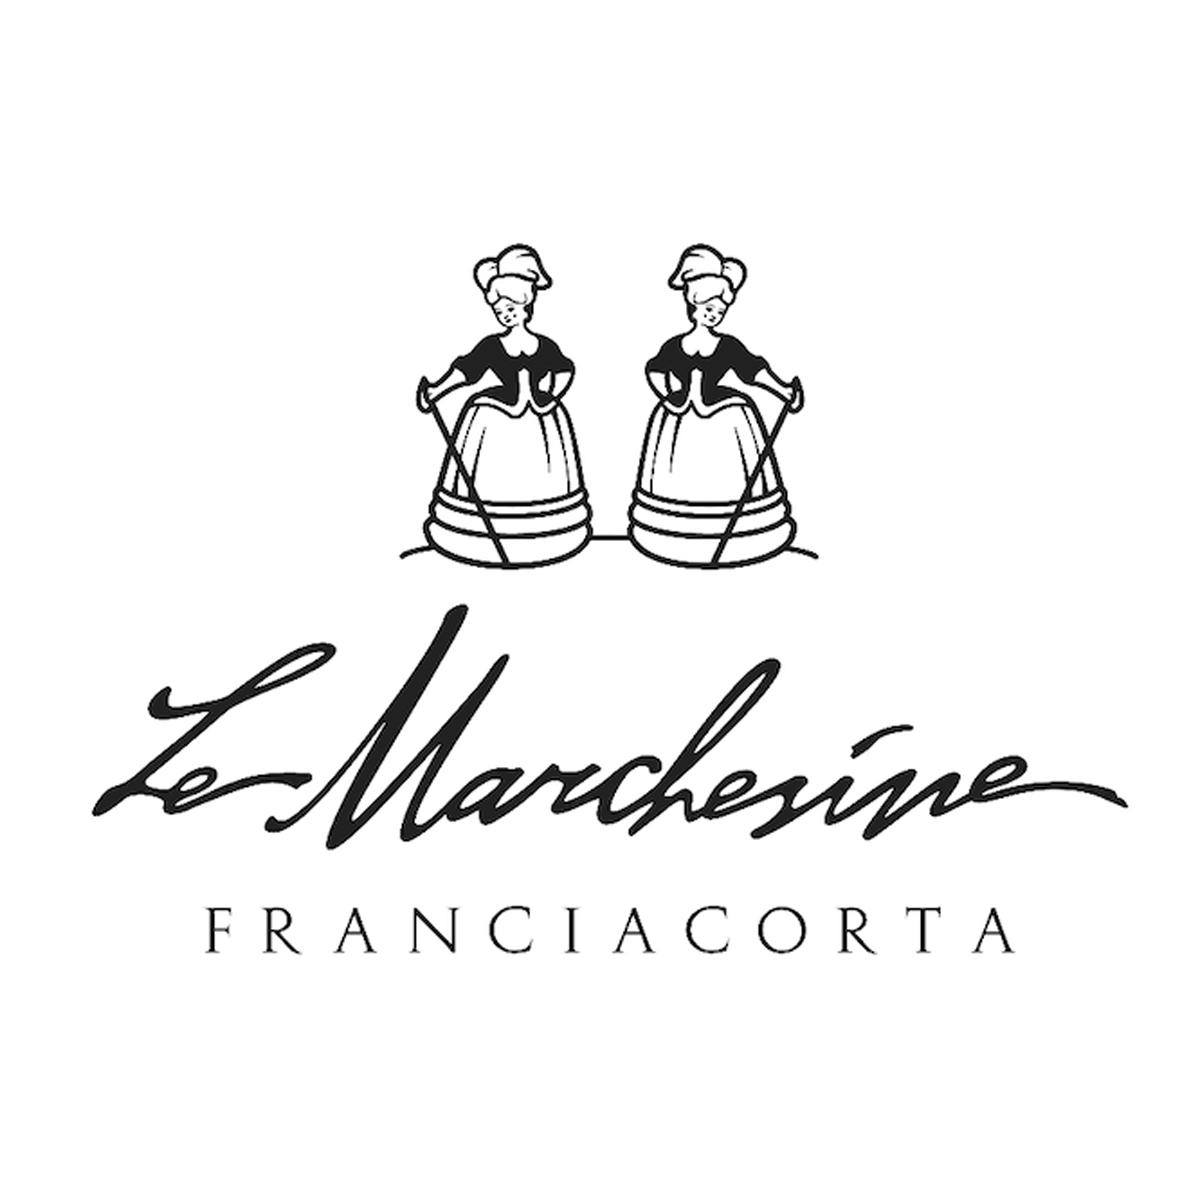 LE-MARCHESINE-FRANCIACORTA-WINE